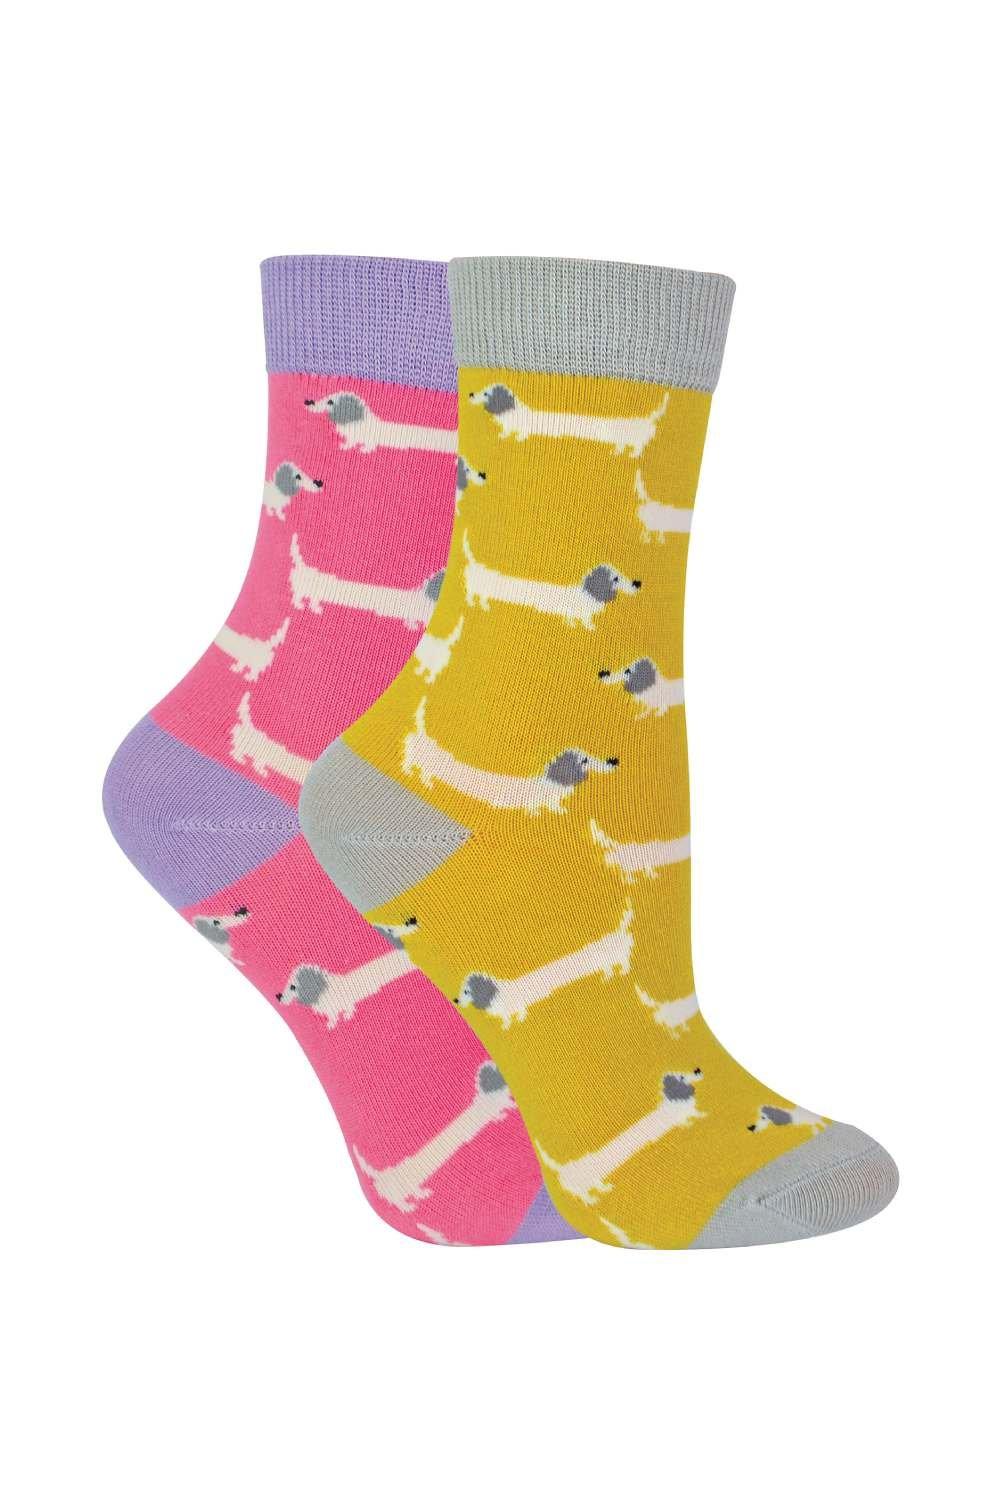 цена Комплект из 2 носков с животными | Бамбуковые носки с необычным узором Miss Sparrow, желтый